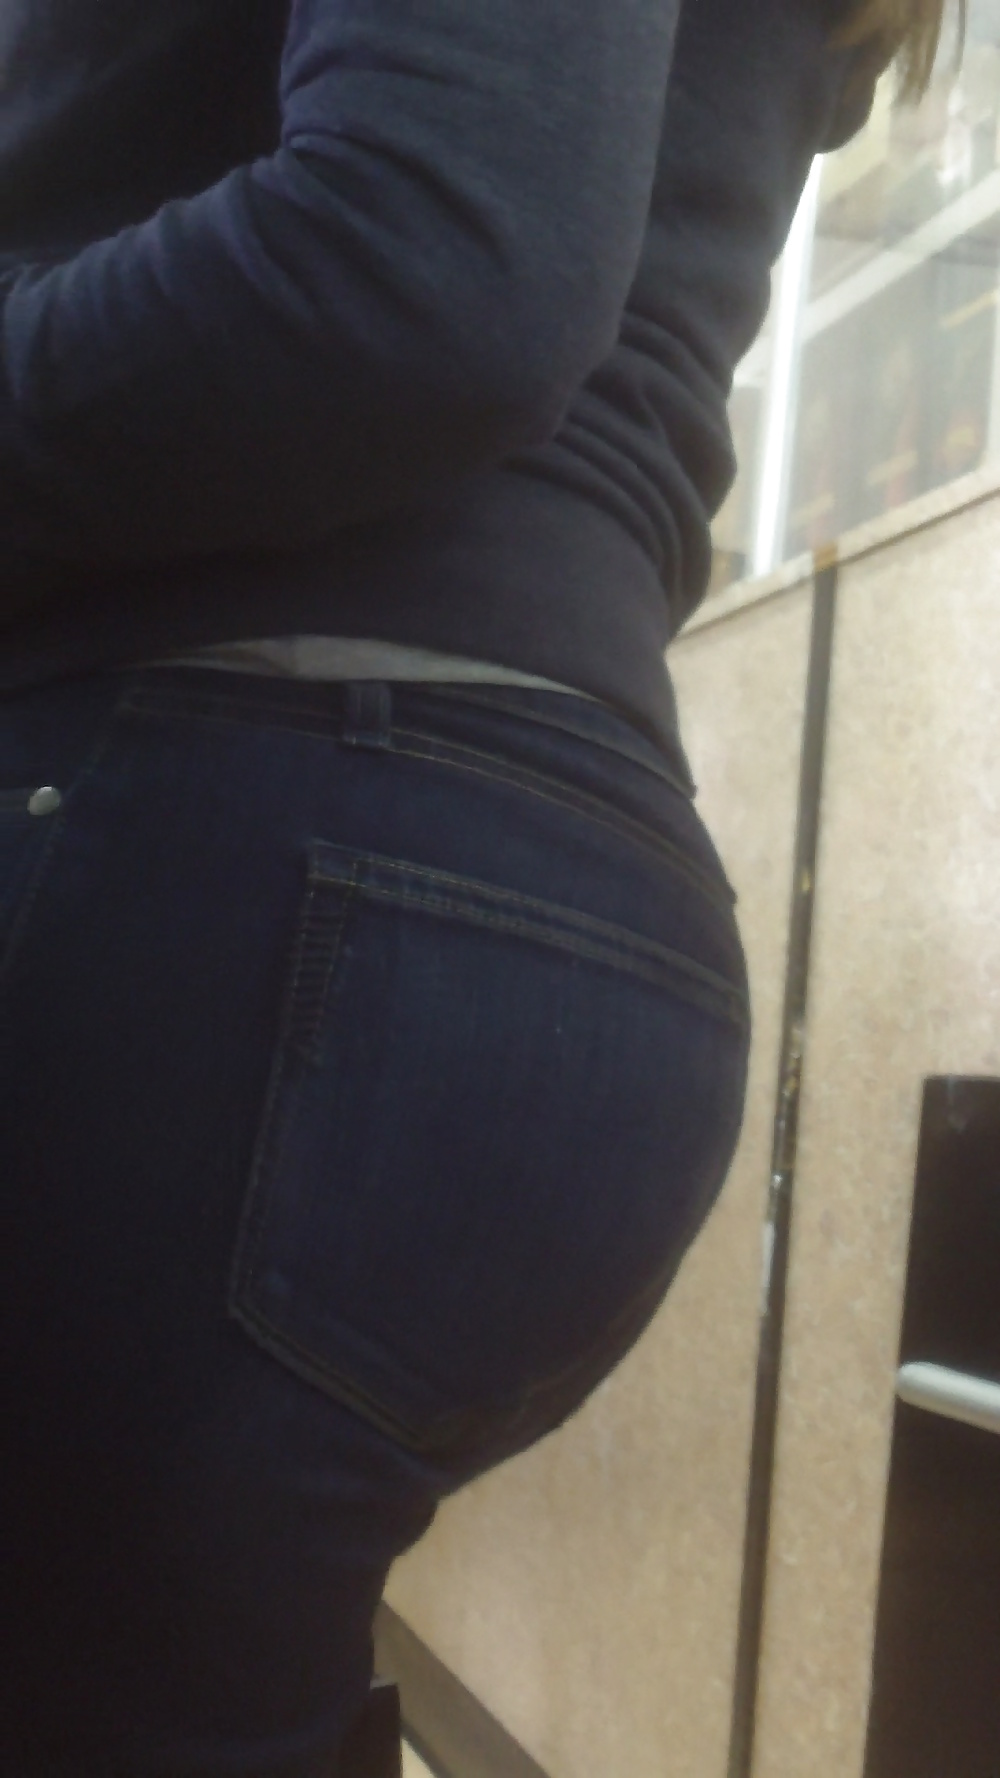 Popular teen girls ass & butt in jeans Part 7 #39942416